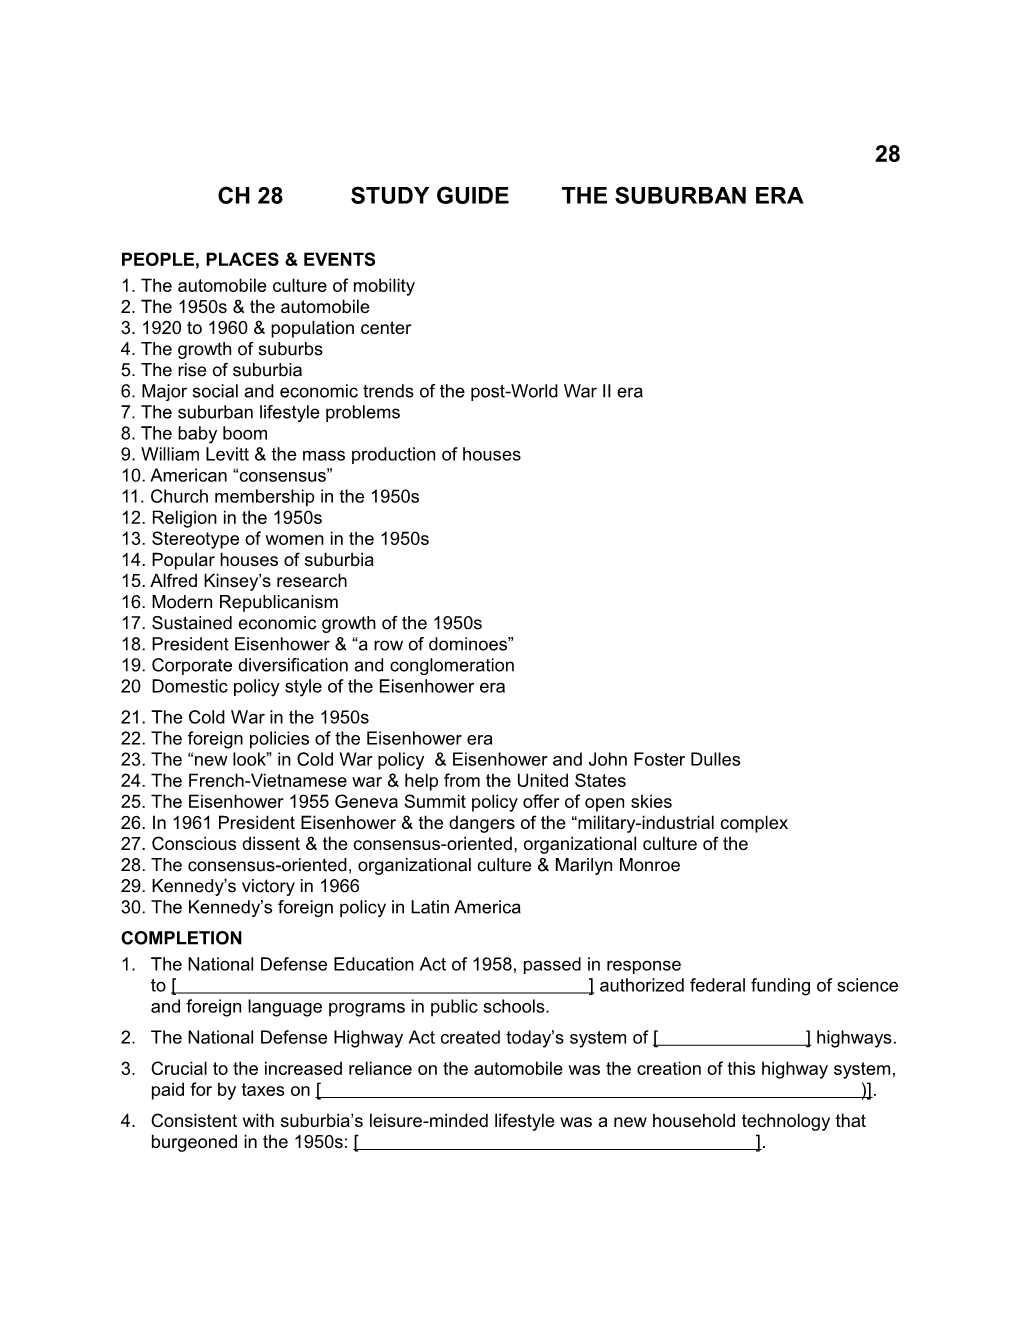 Ch 28 Study Guide the Suburban Era